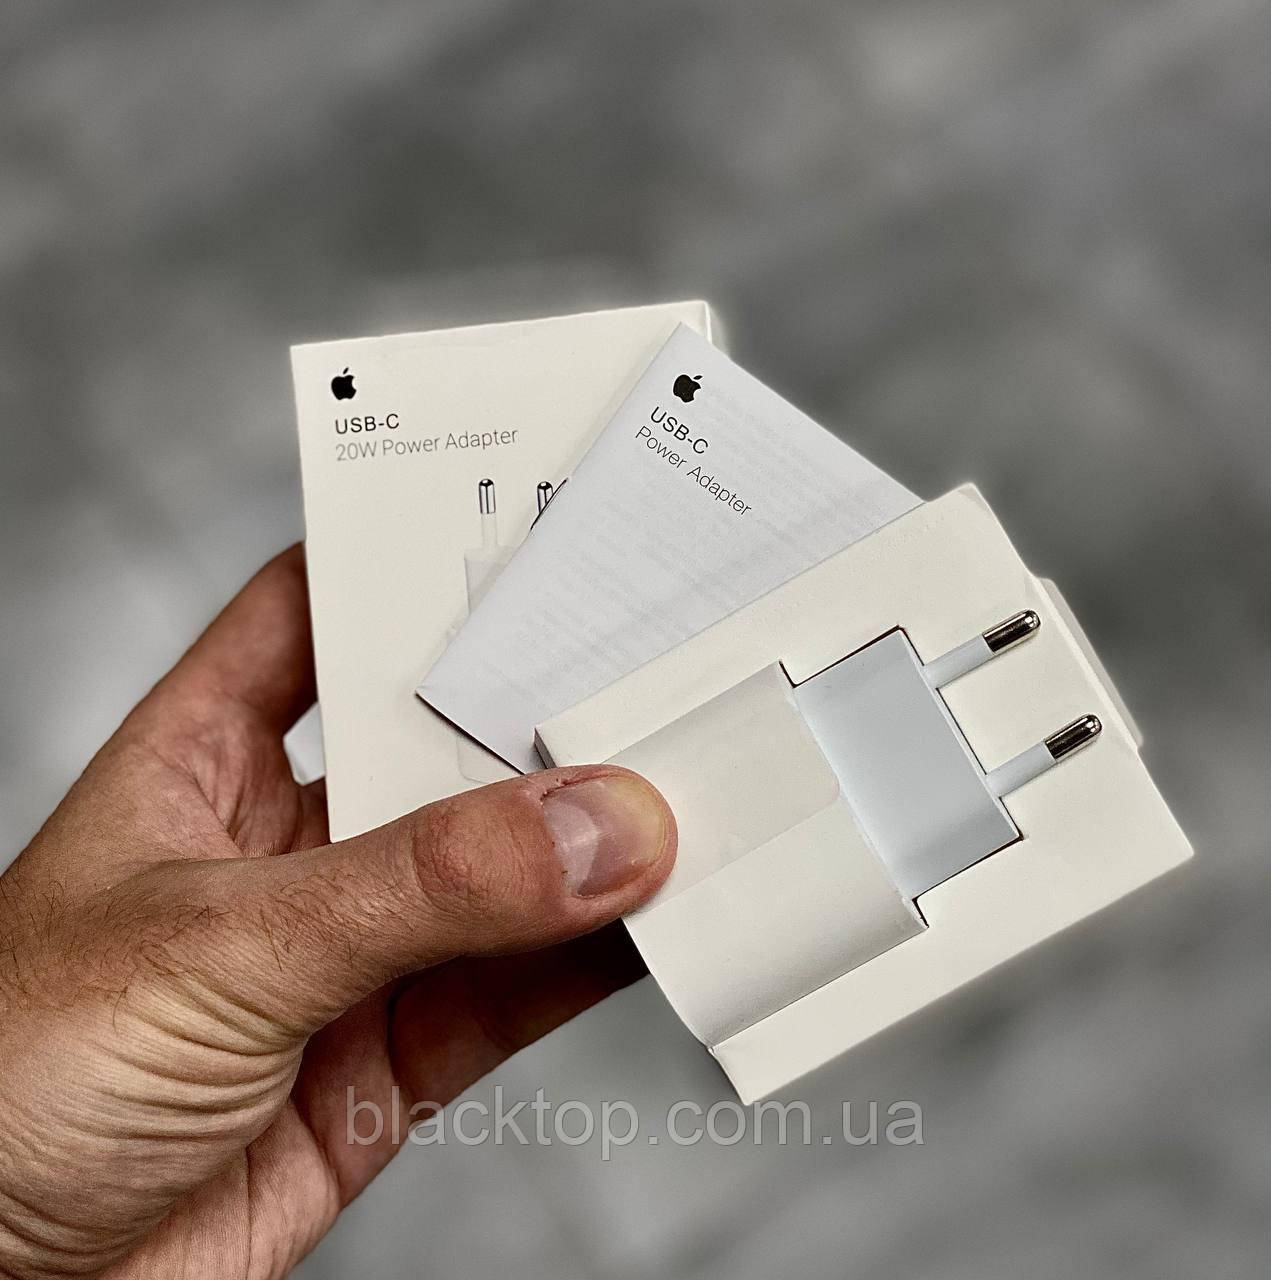 

Сетевое зарядное устройство адаптер блок питания для портативной техники USB-C Power Adapter 20W к телефону, Белый